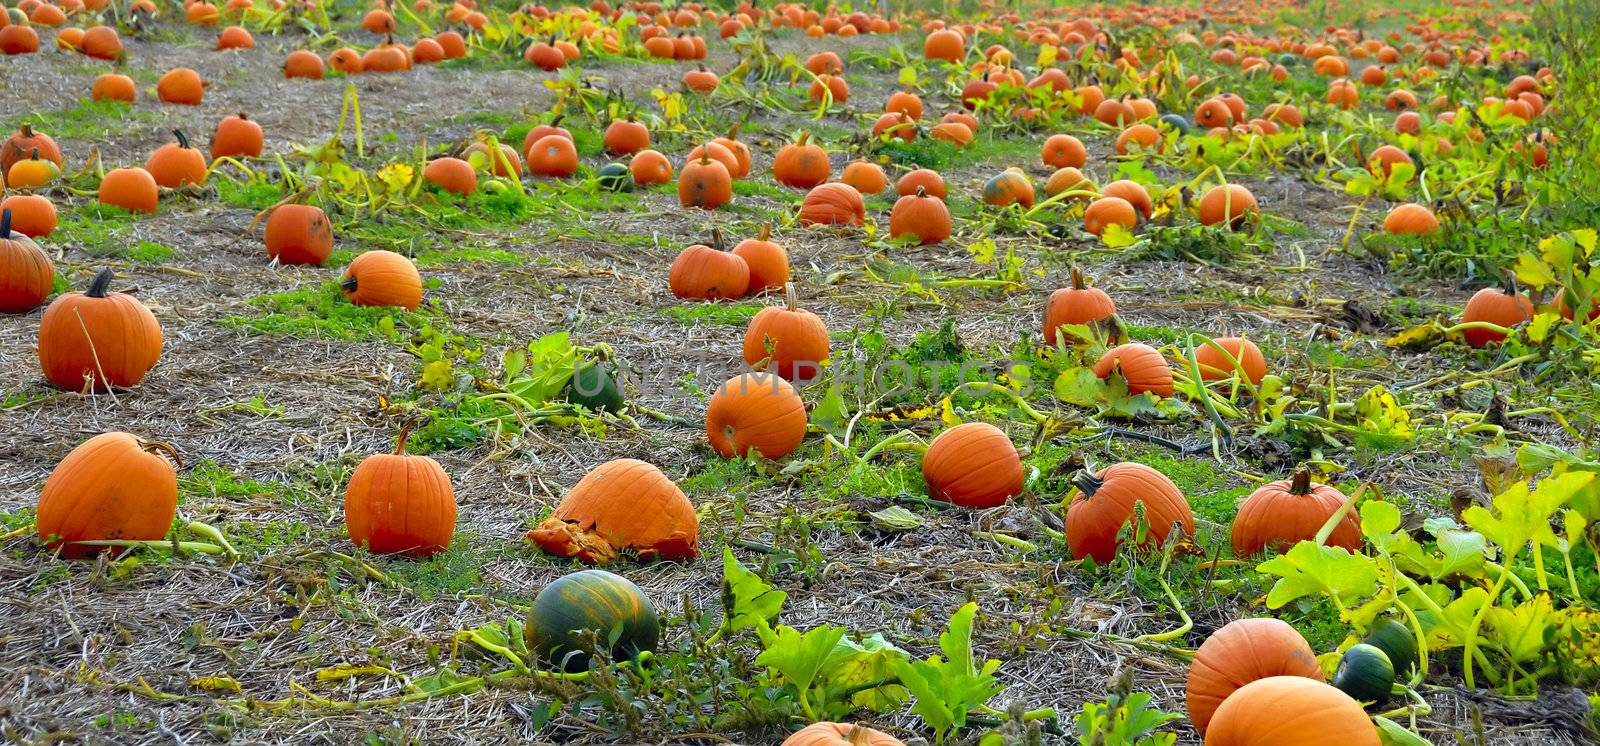 Pumpkins by pazham